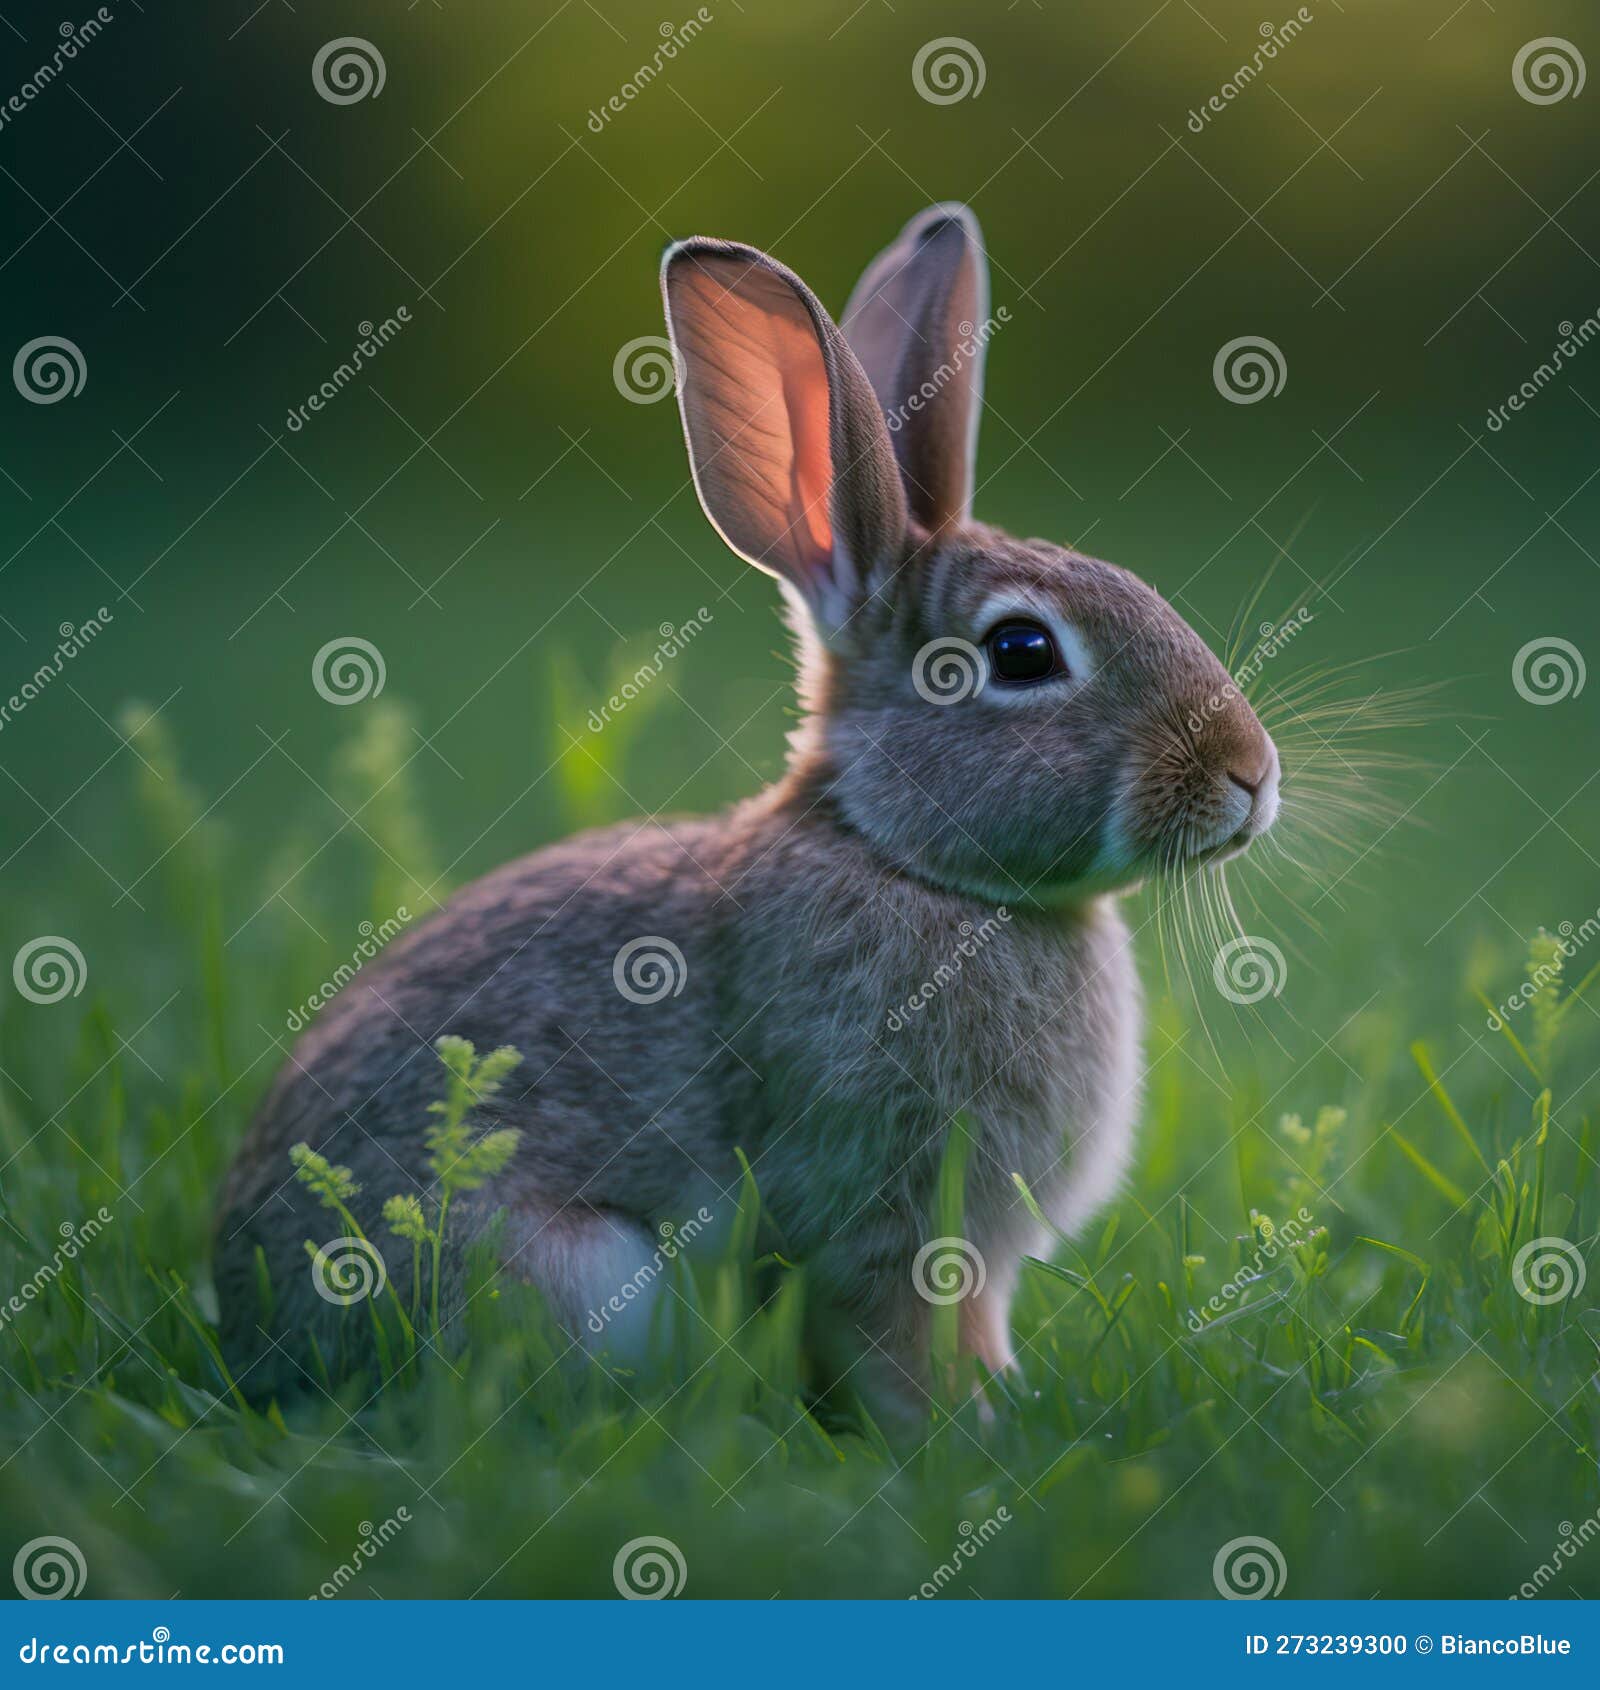 sedate easter rhinelander rabbit portrait full body sitting in green field